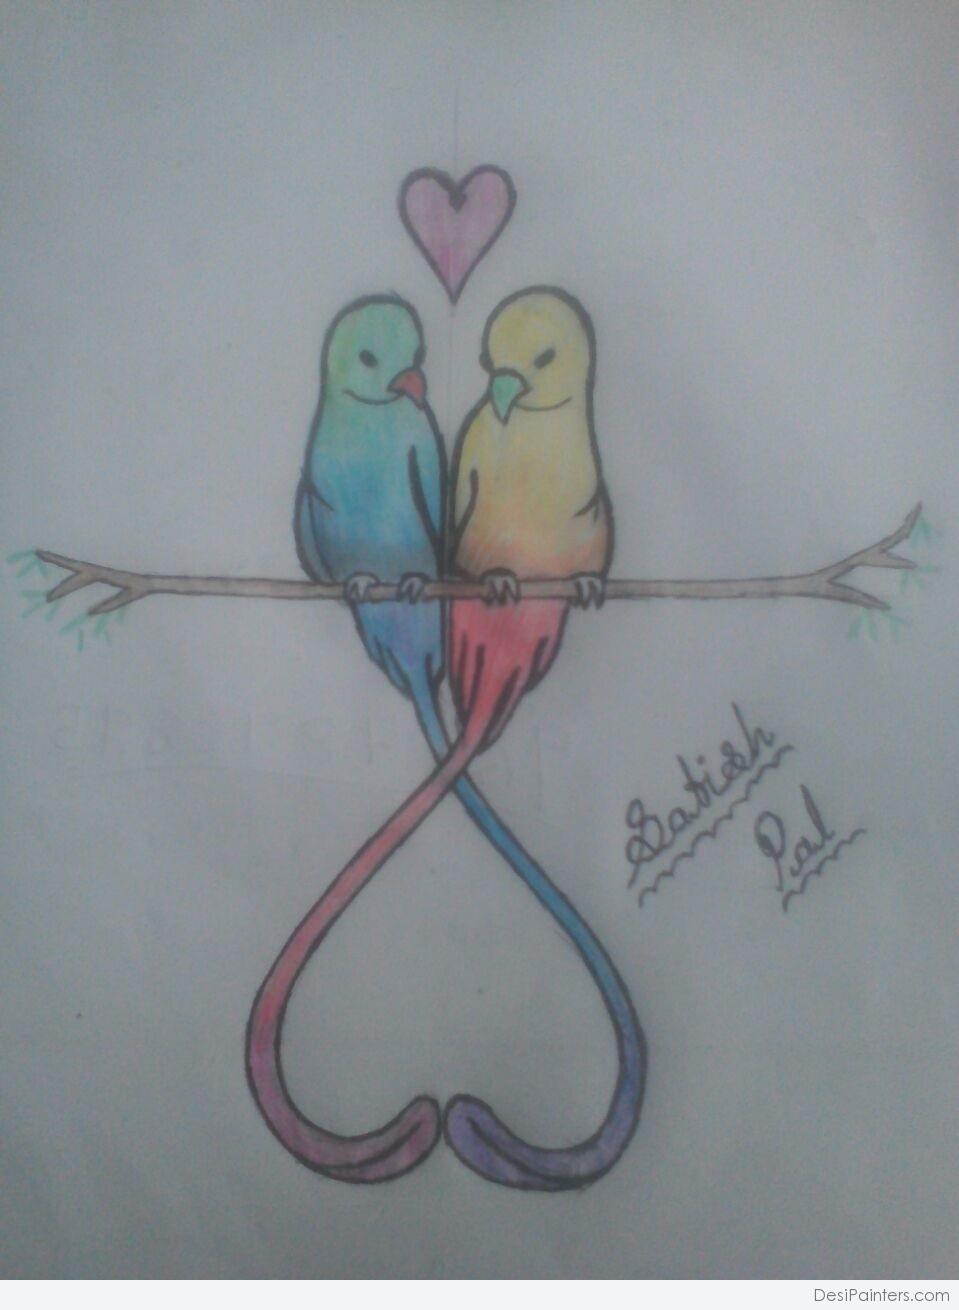 Pencil Color Sketch of Love bird | DesiPainters.com